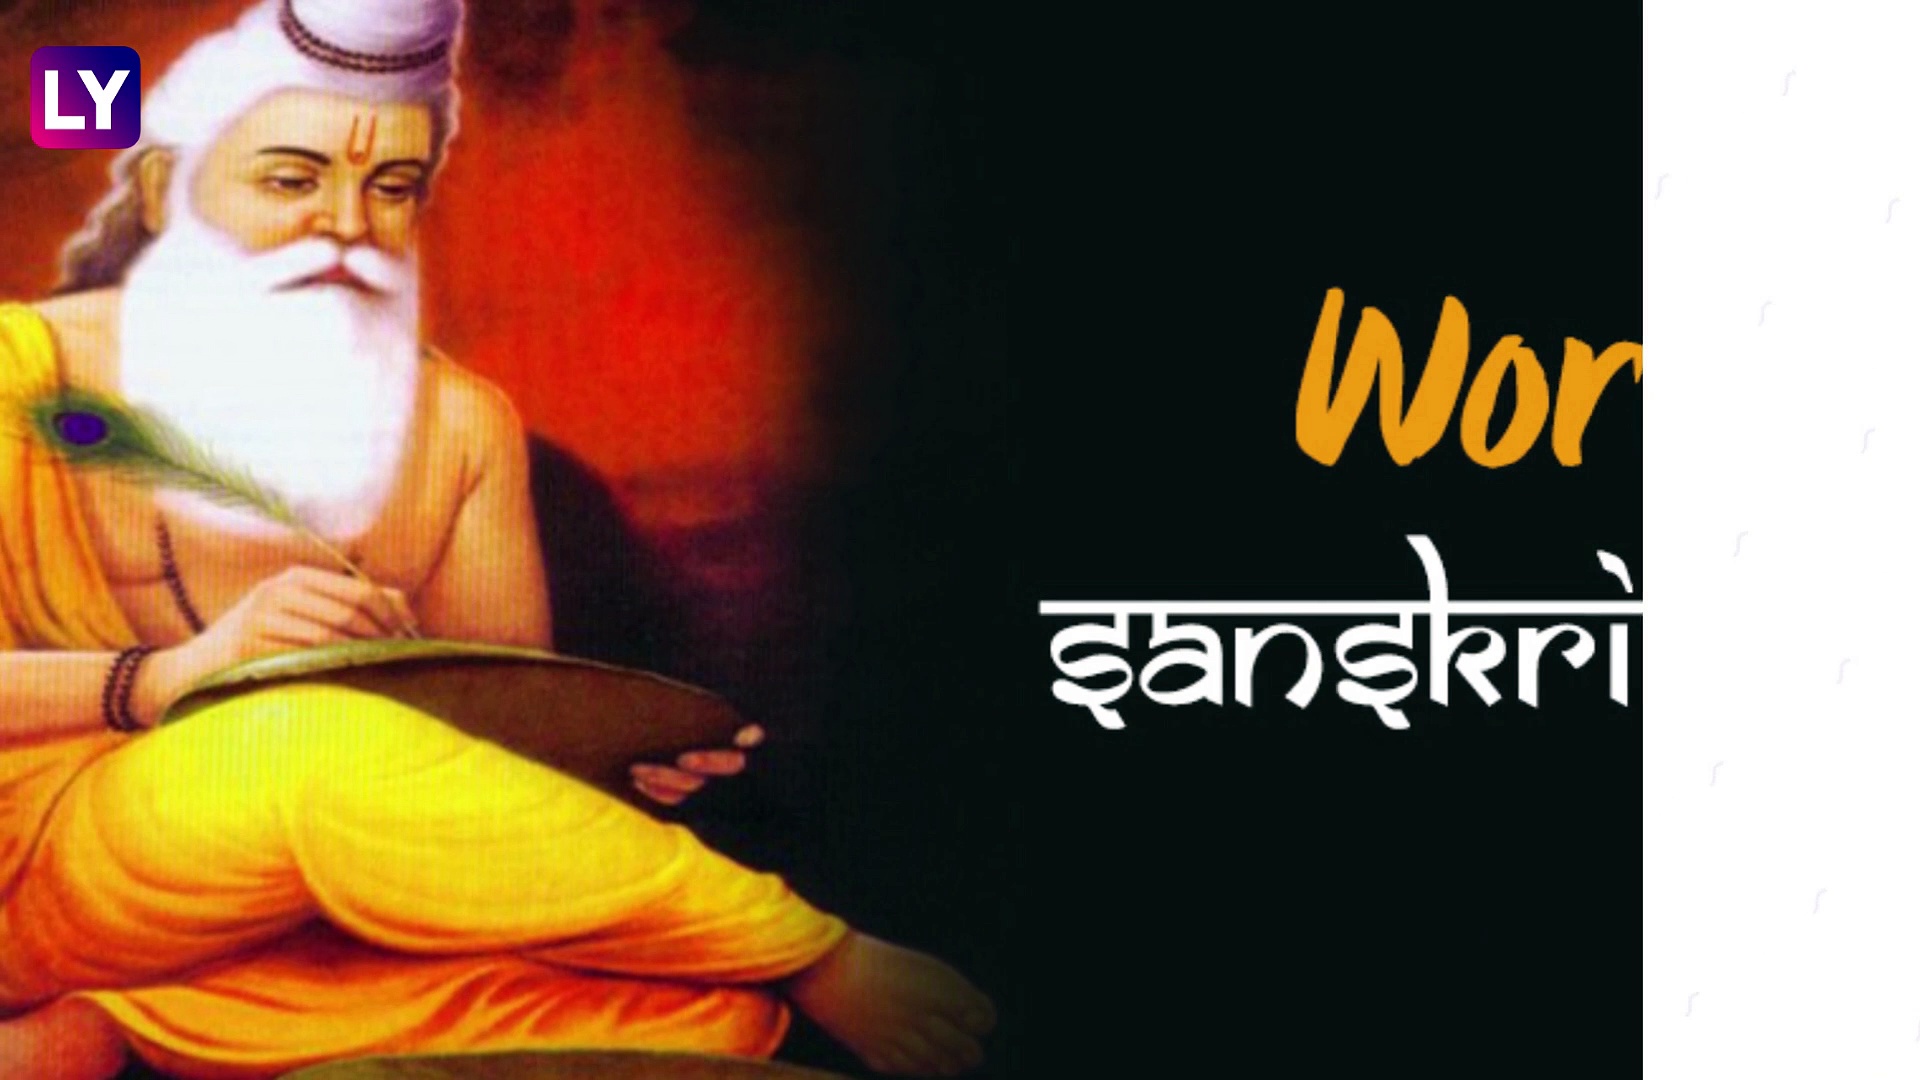 World Sanskrit Day 2020: Quick Facts About Sanskrit Diwas That Aims to Revive the Sanskrit Language